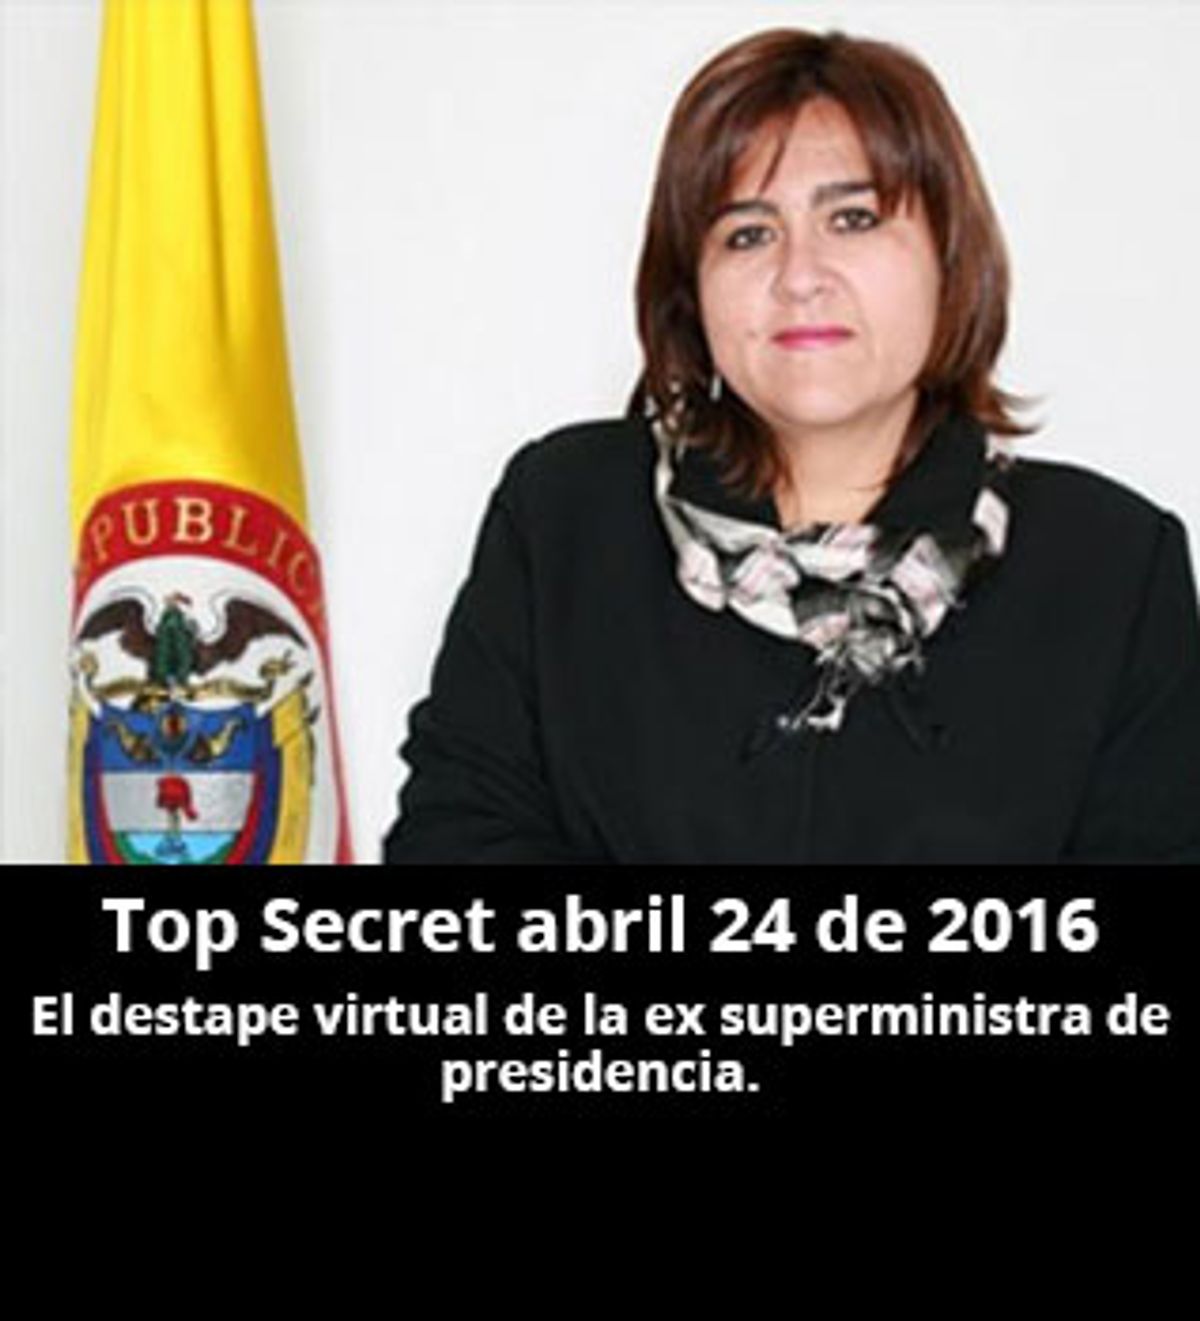 Top Secret abril 24 de 2016